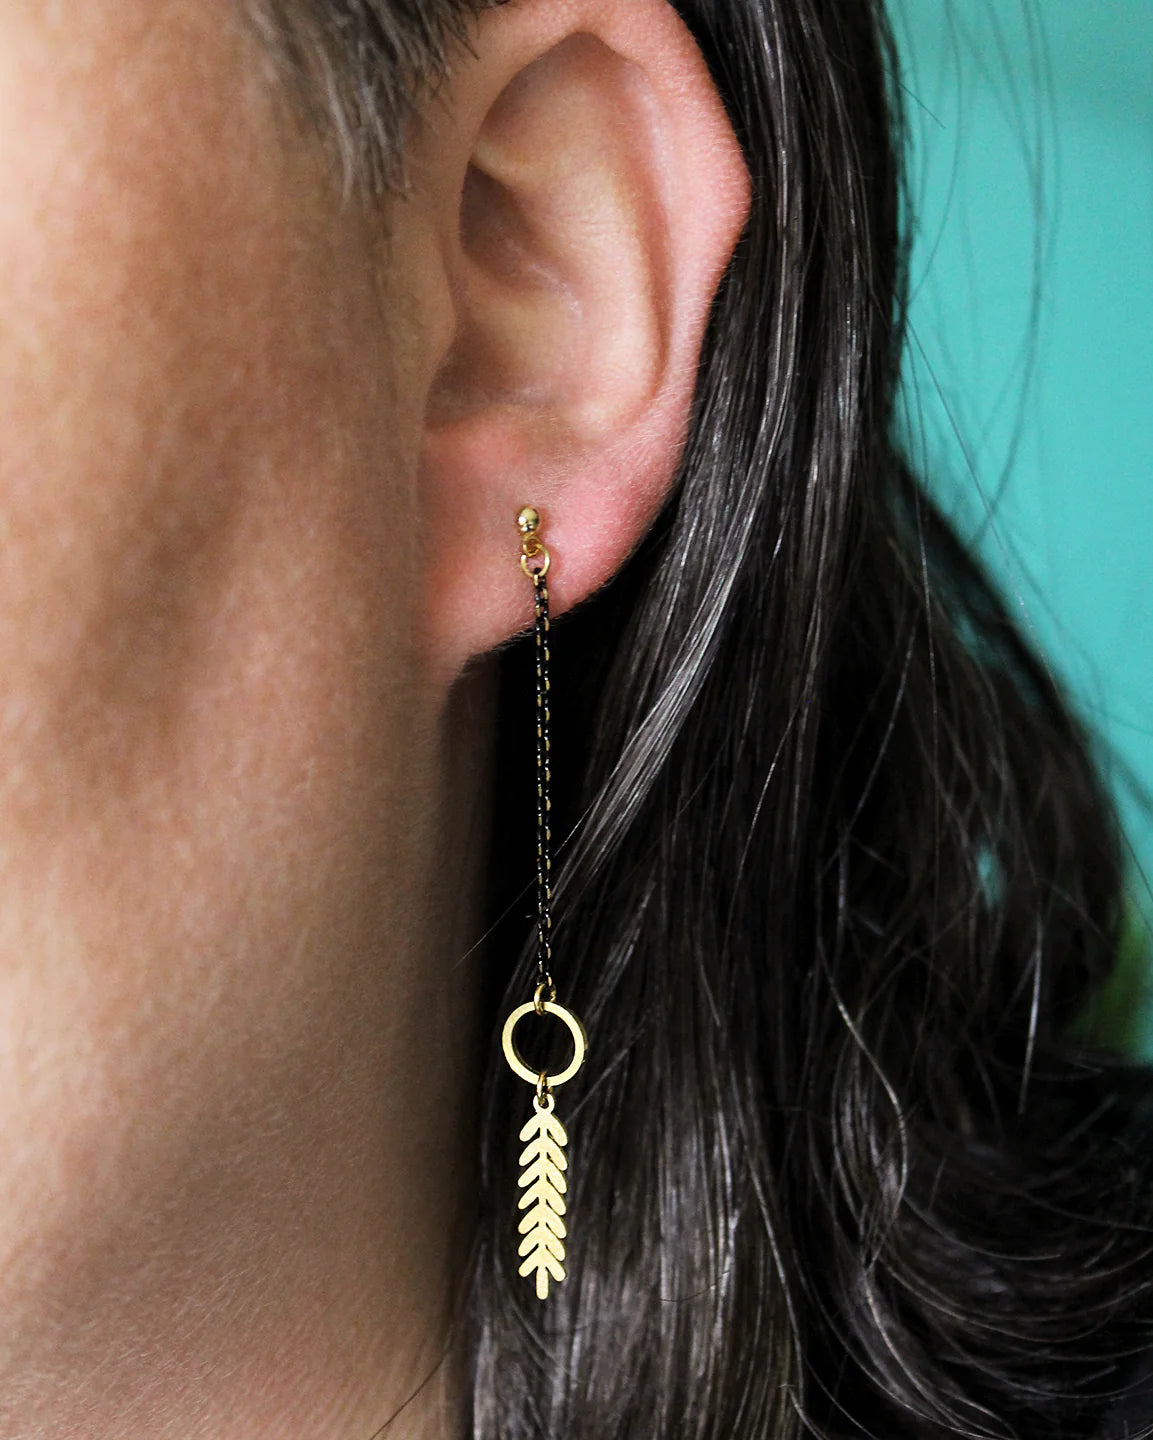 Twig earrings